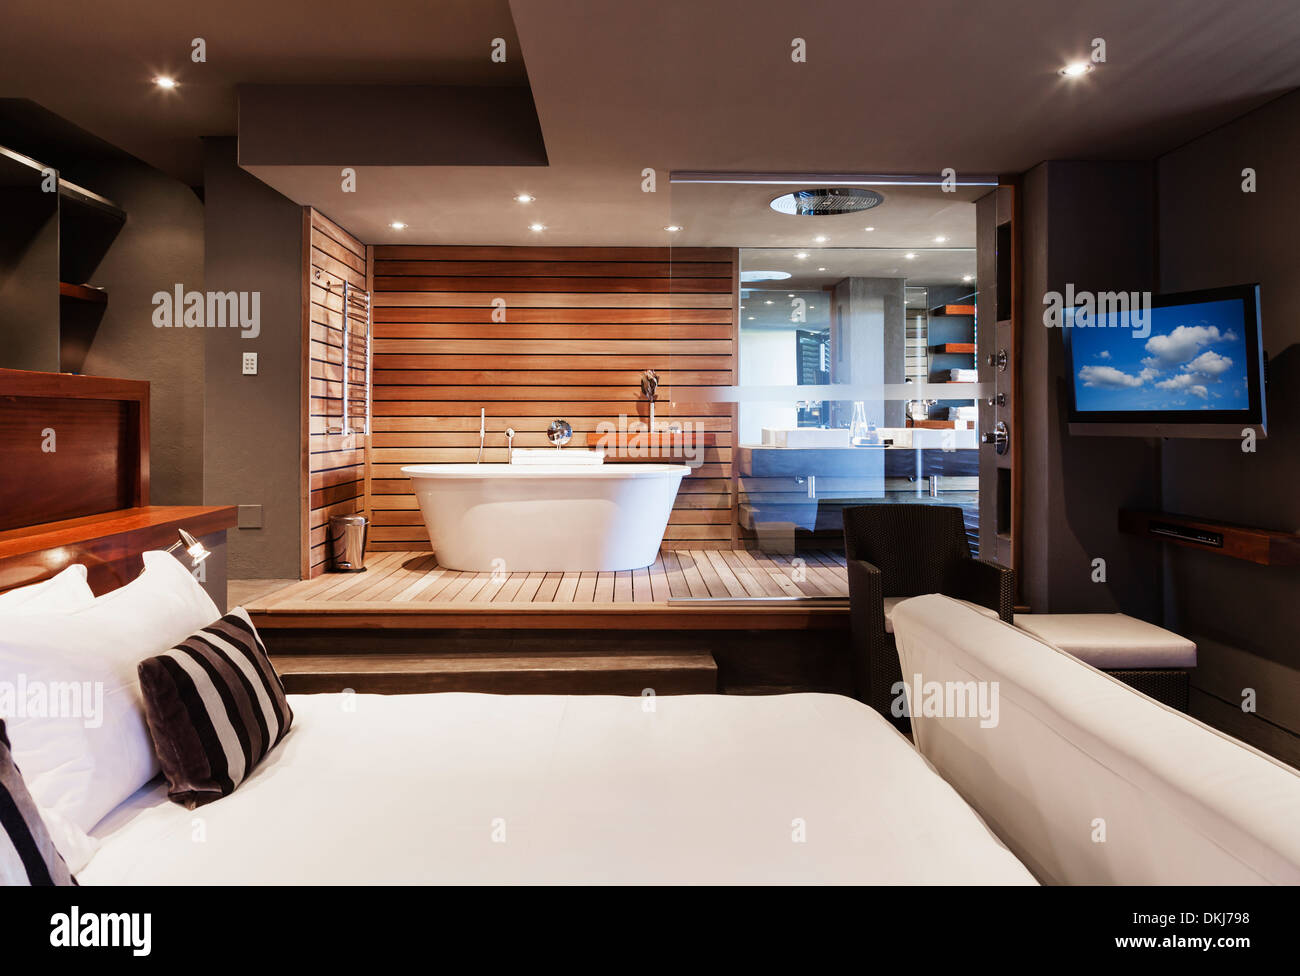 Bett und Badewanne im modernen Schlafzimmer Stockfoto